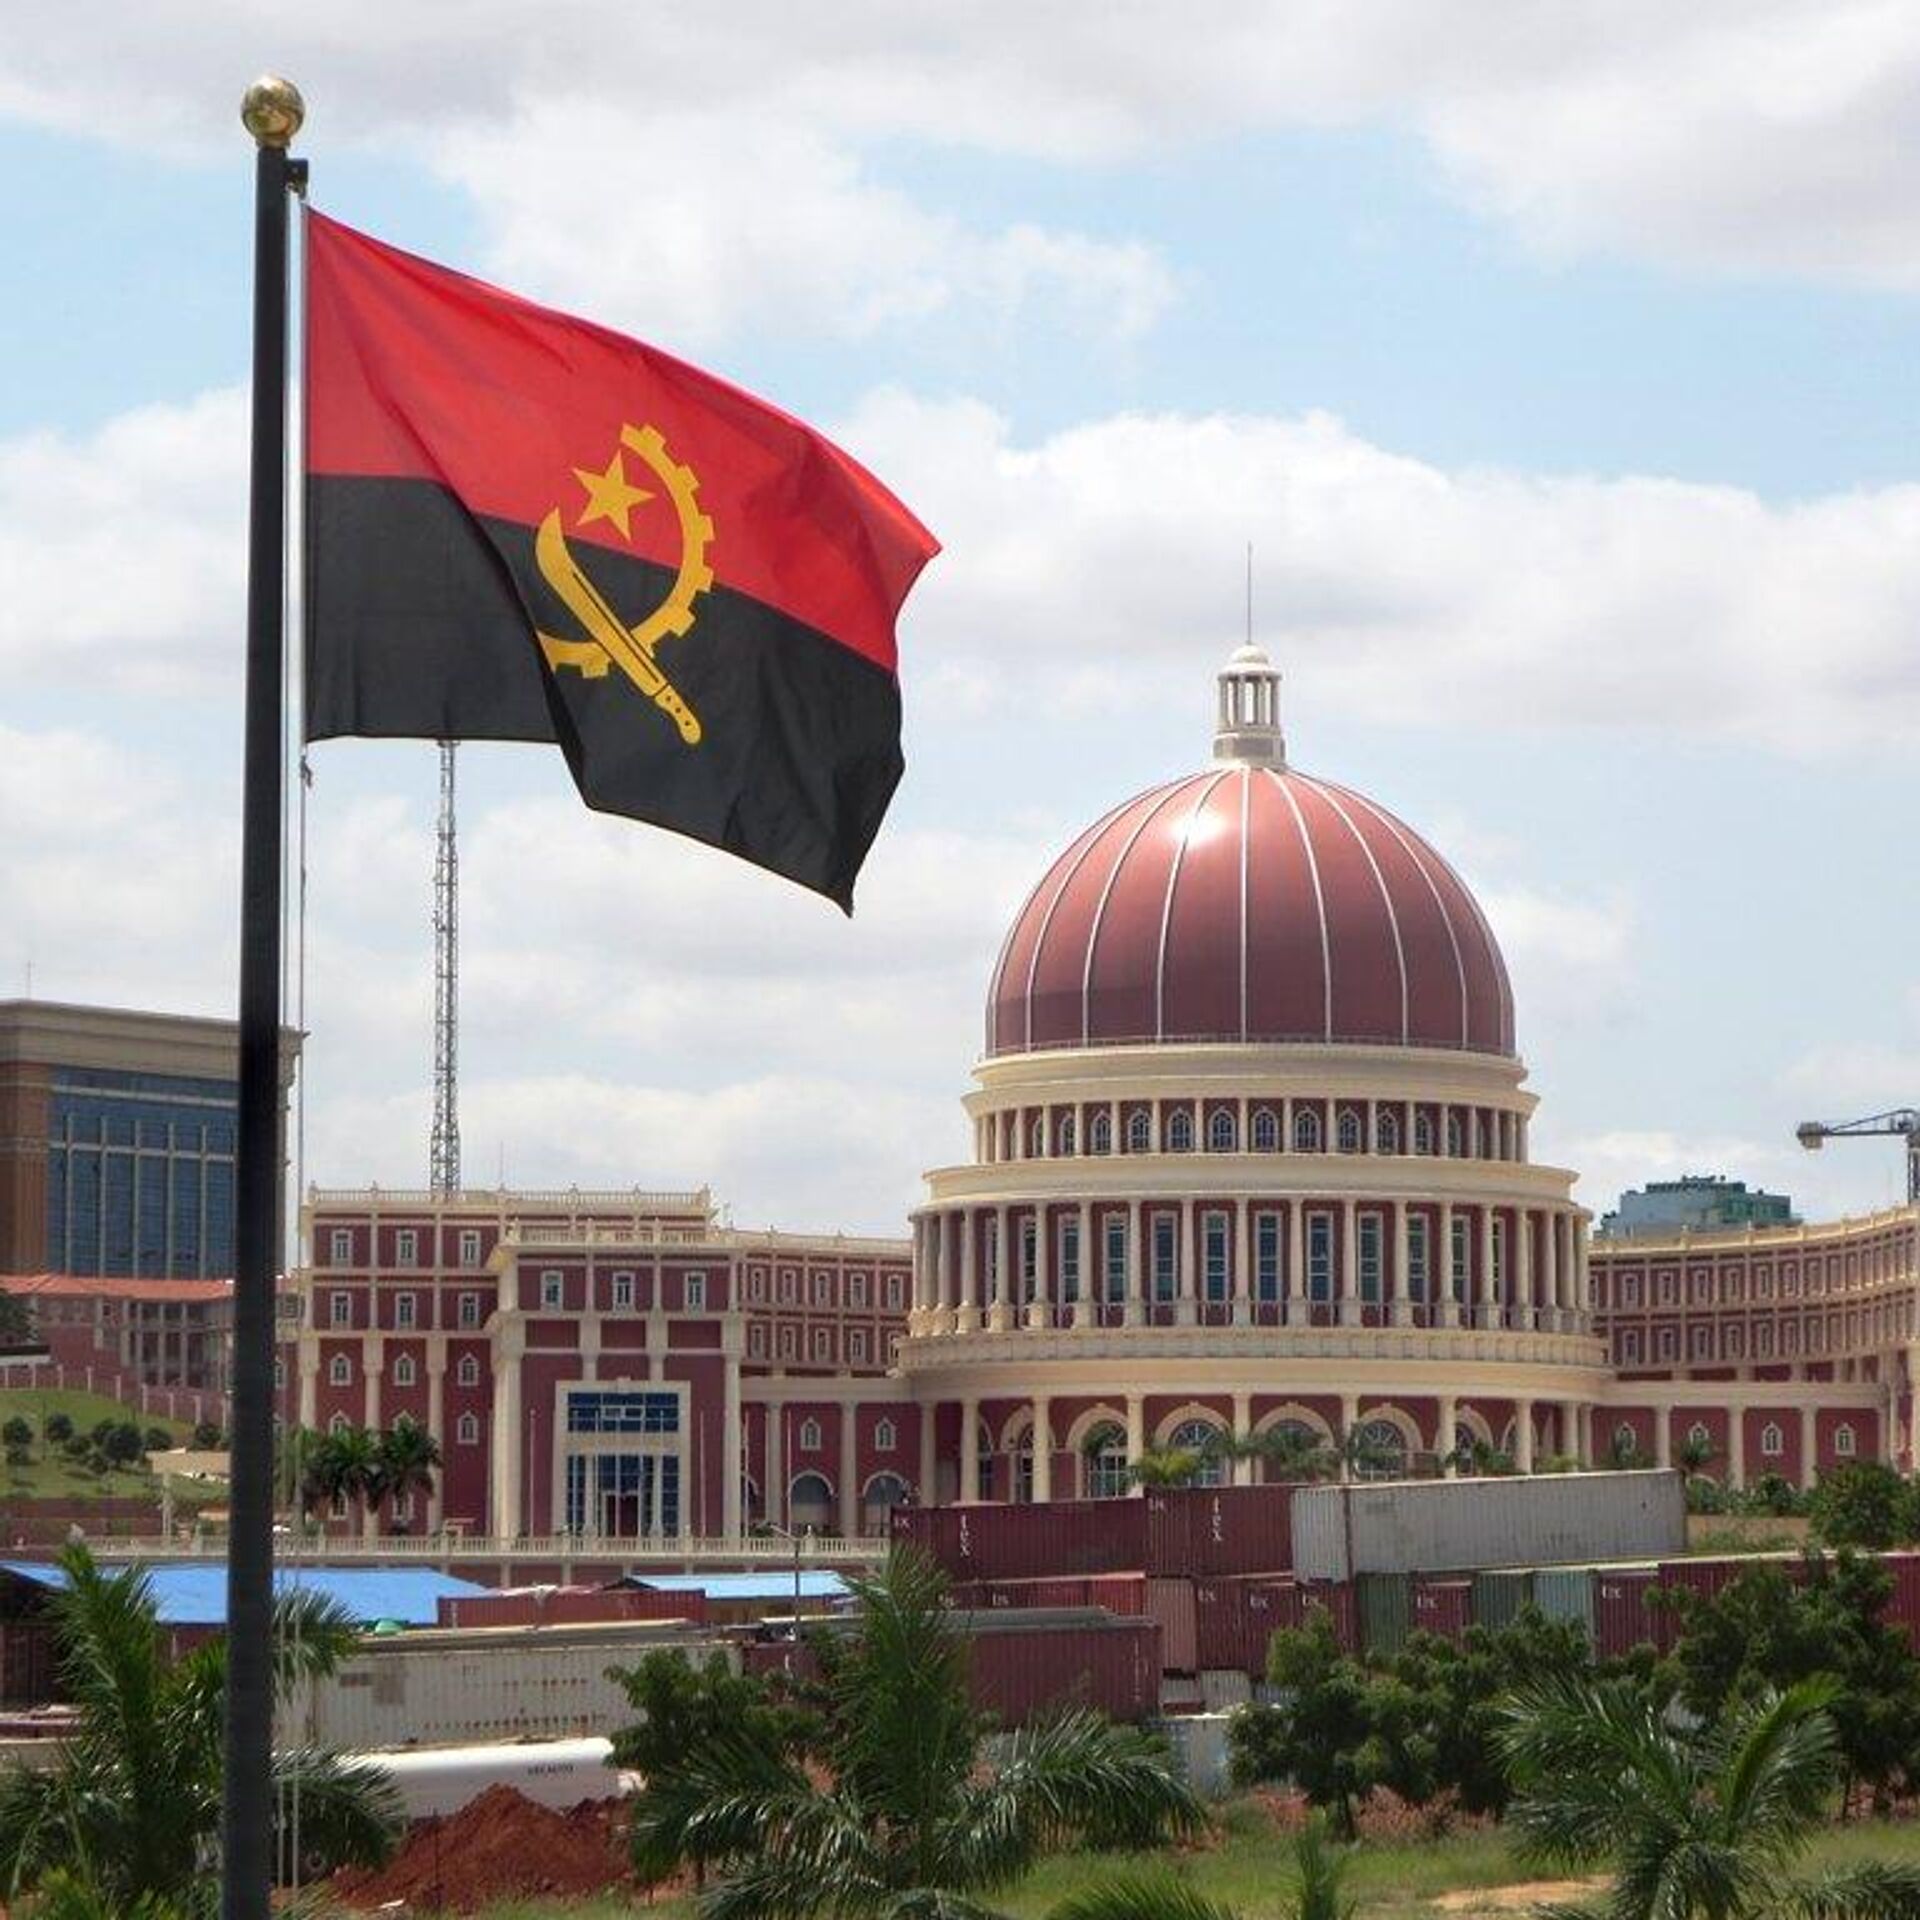 Embaixada da Federação da Rússia na República de Angola